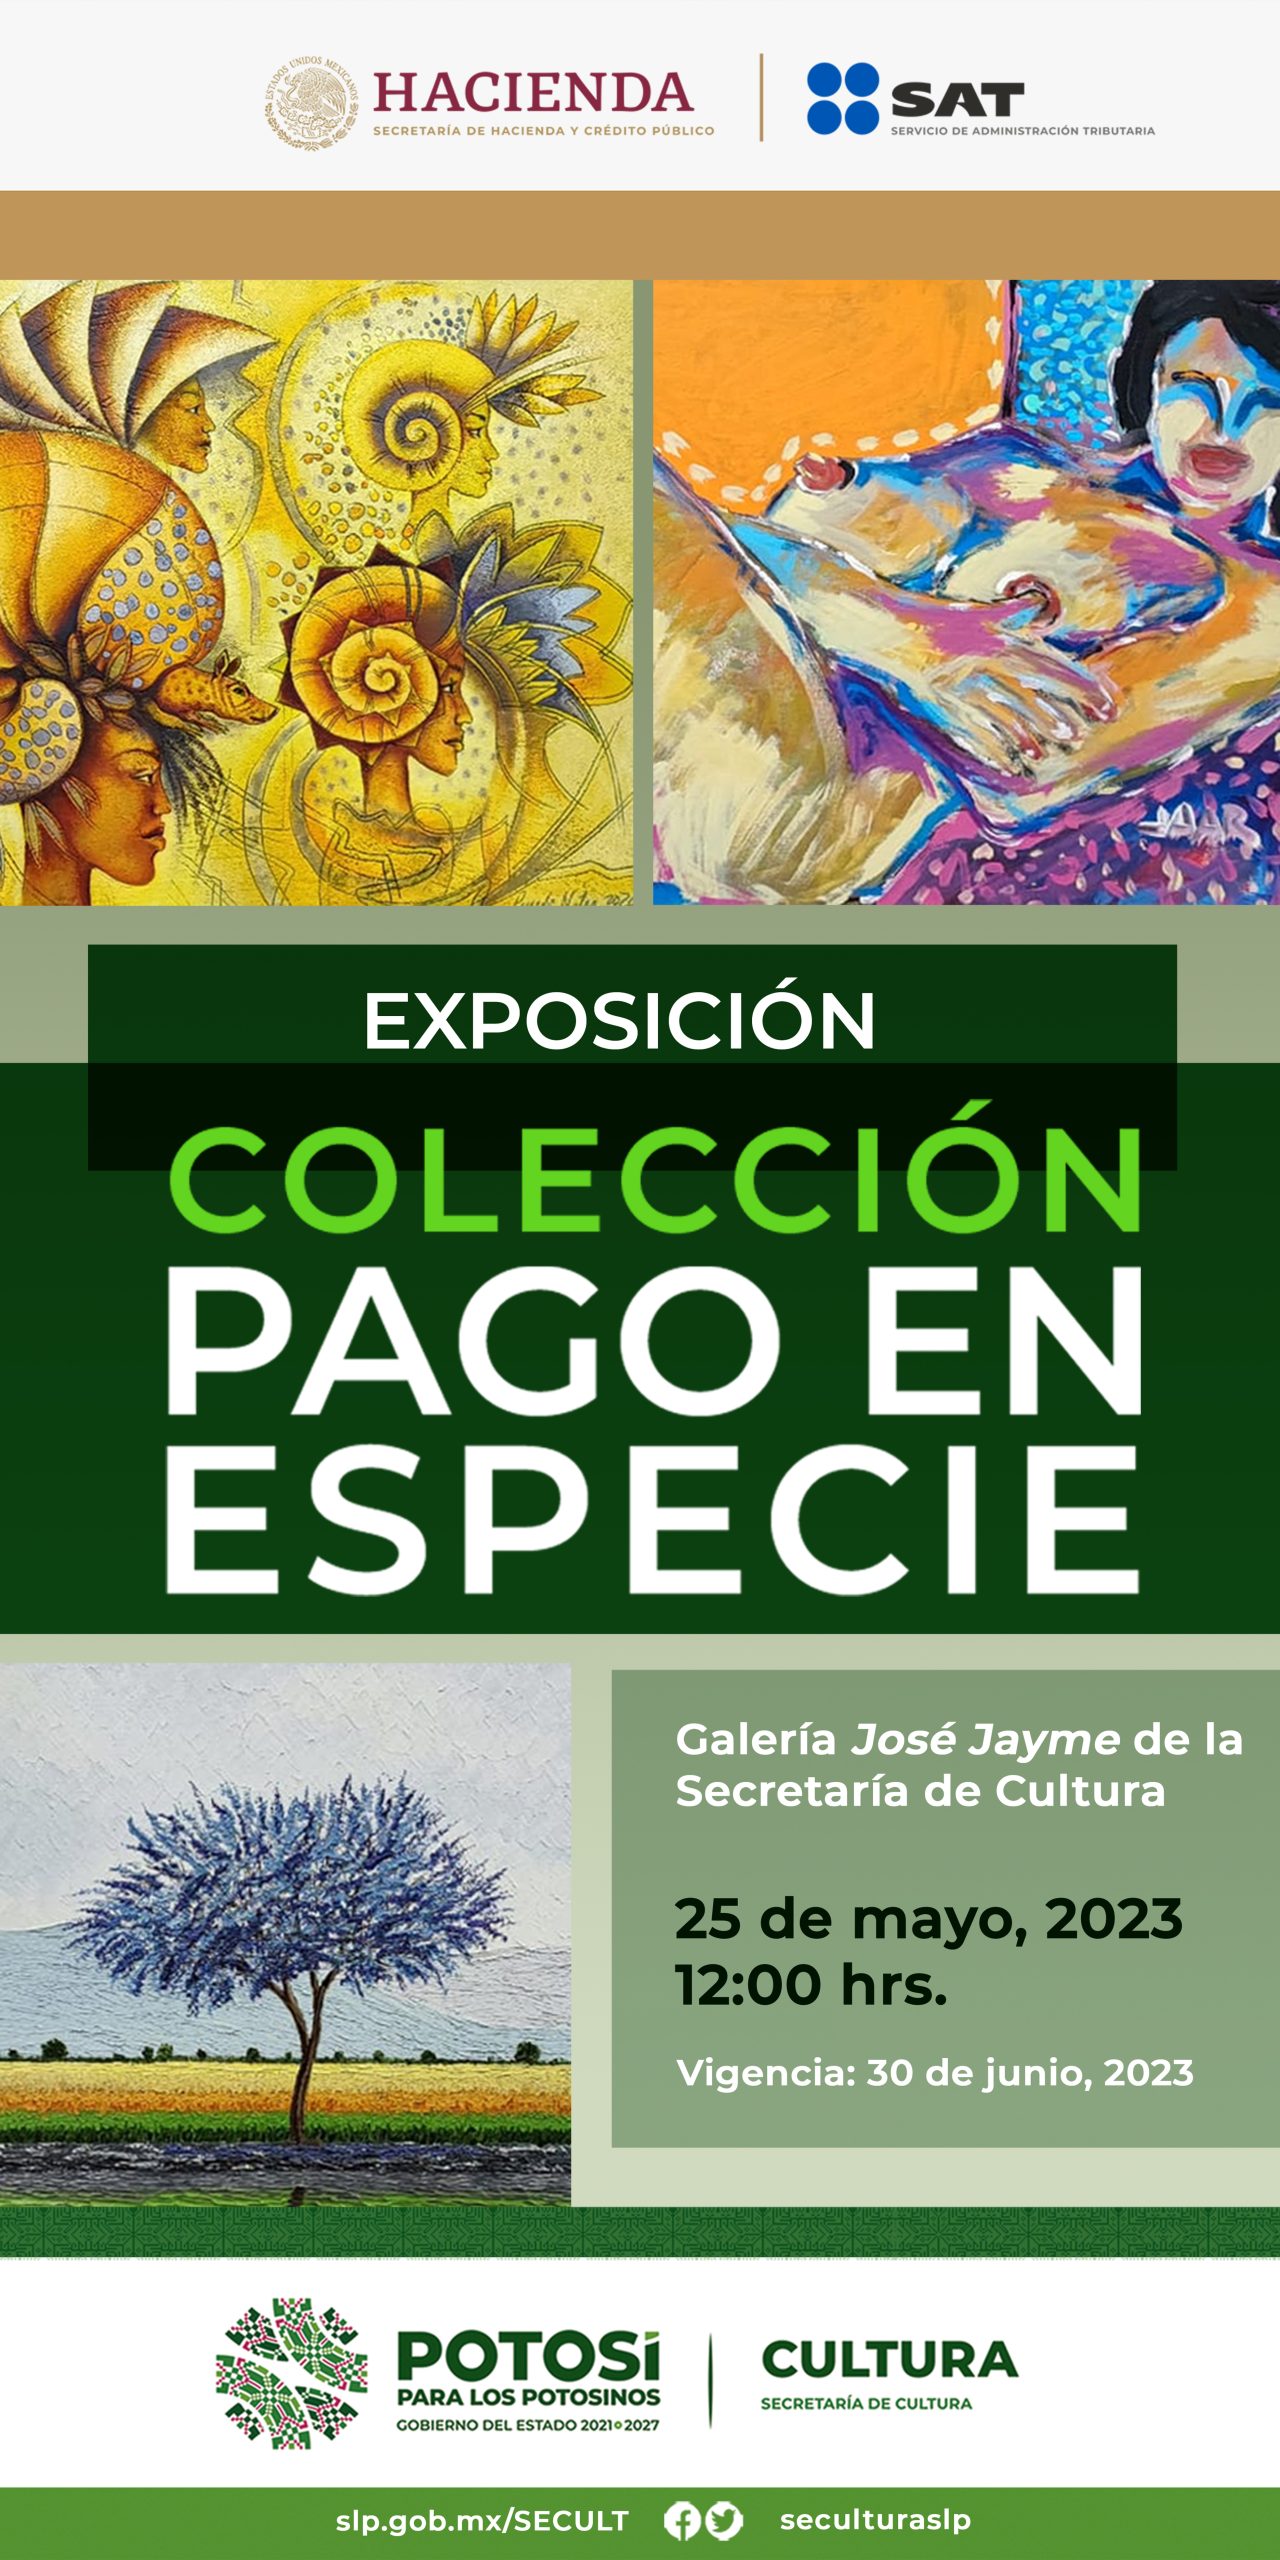 Se llevará a cabo el jueves 25 de mayo a las 12:00 horas en Galería José Jayme de la Secretaría de Cultura de SLP frente al Jardín Guerrero.